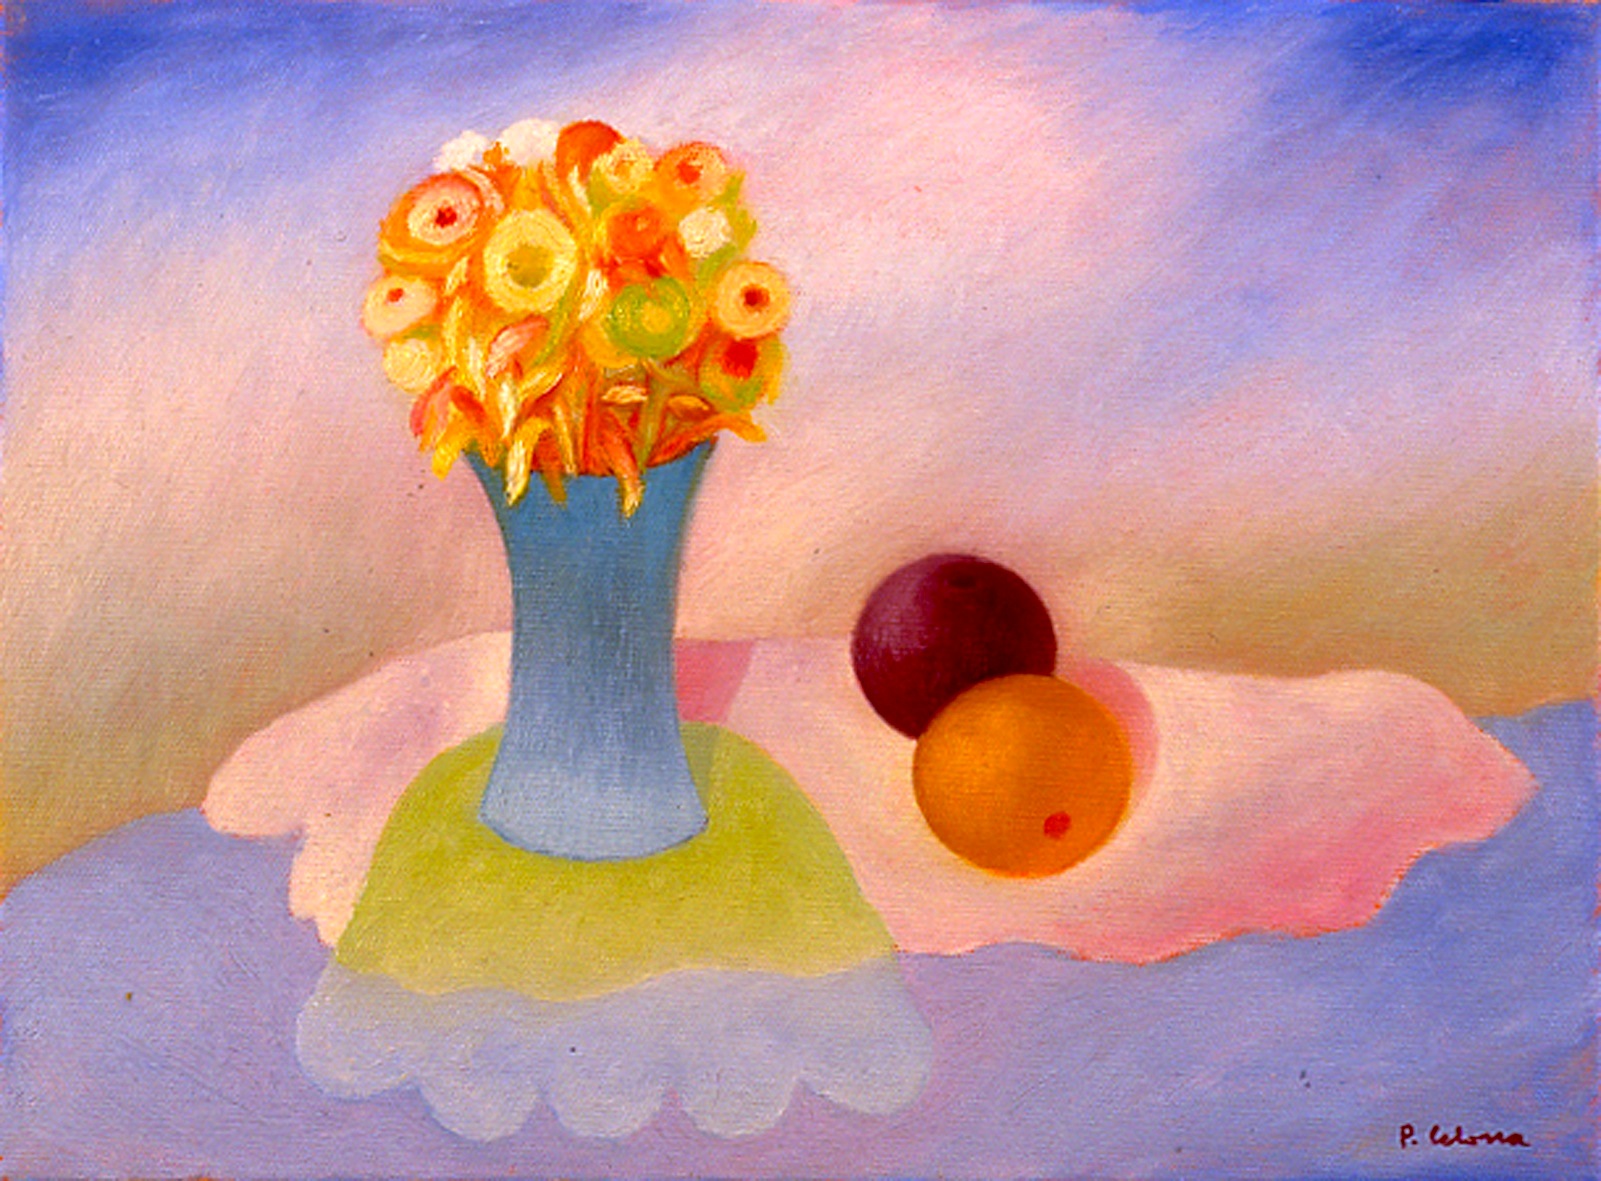 Vaso e fiori con frutti, ca. 1995
Olio su tela
50 x 60 cm